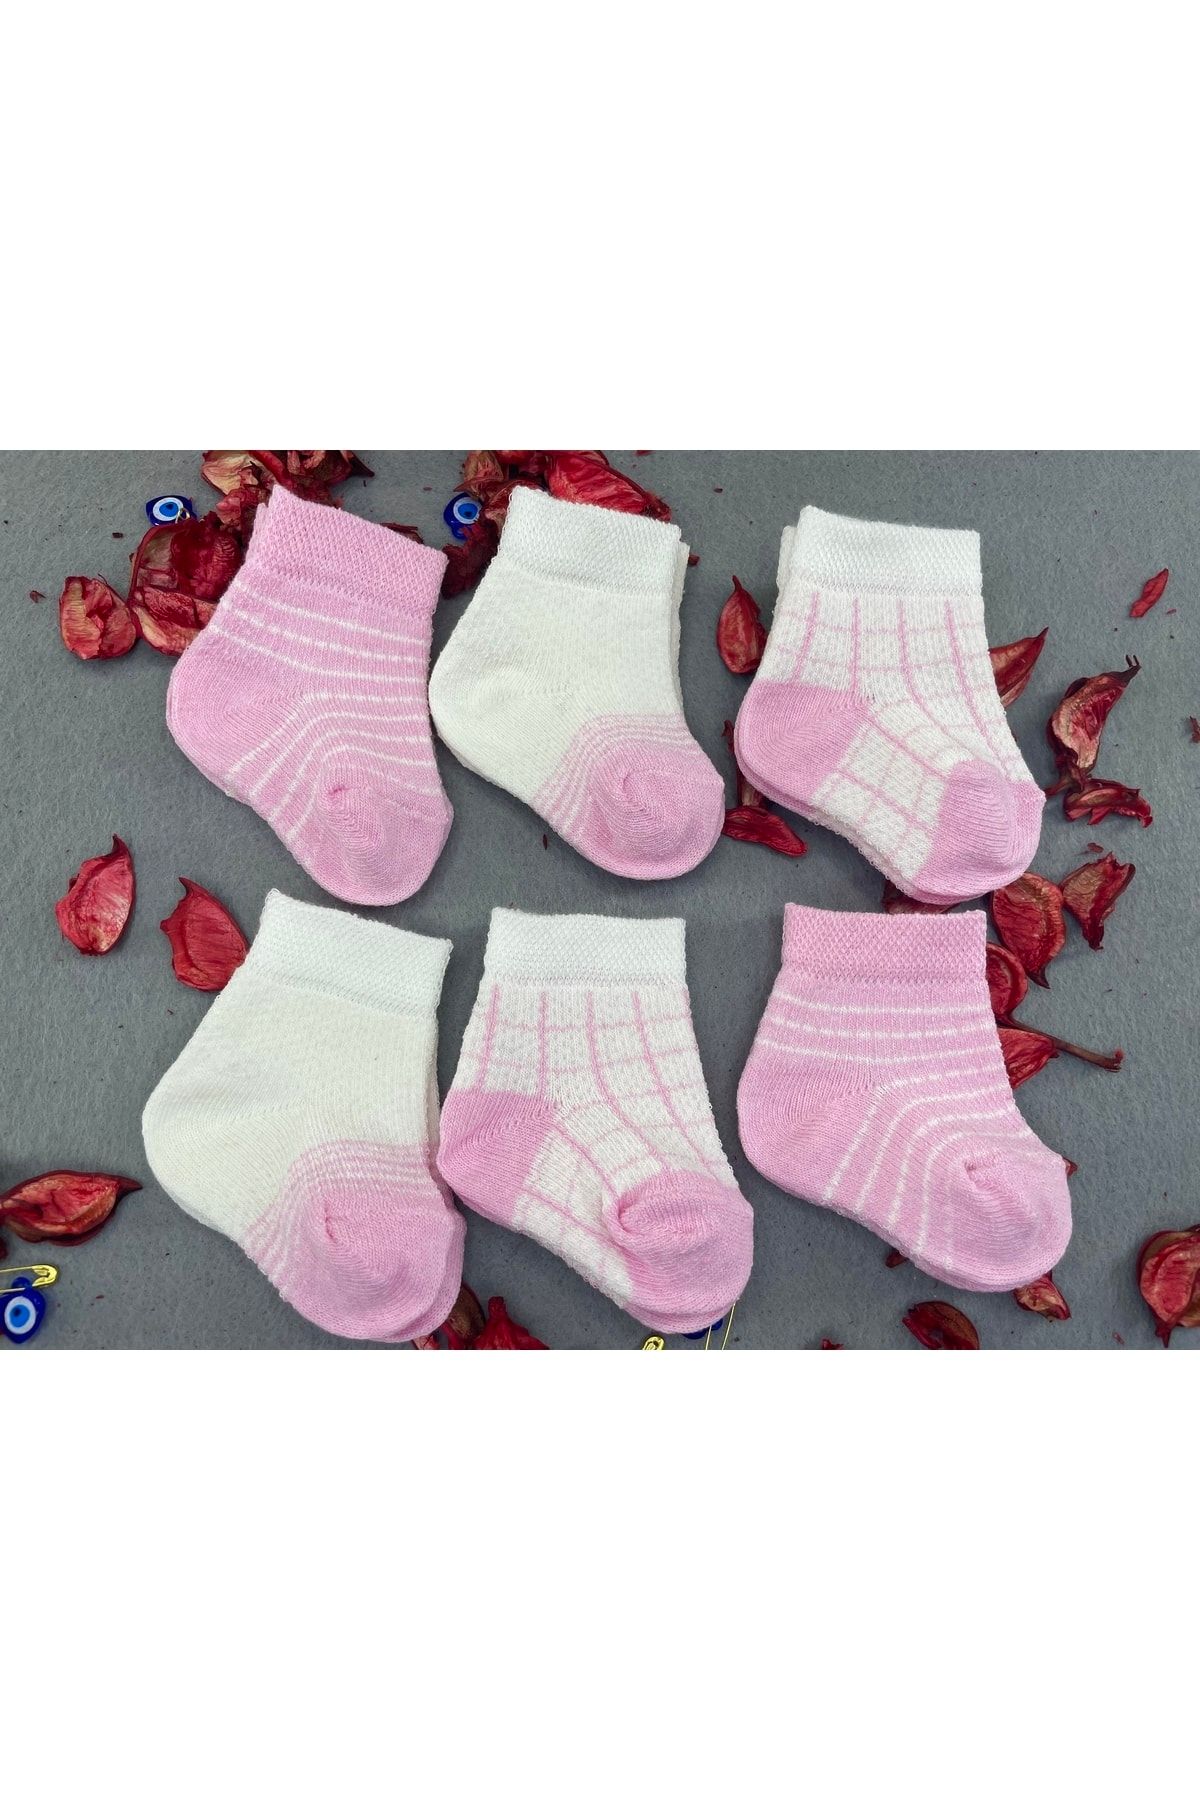 Akface Kare Desenli Pamuklu 6'lı Kız Bebek Çorabı 0-6 Ay